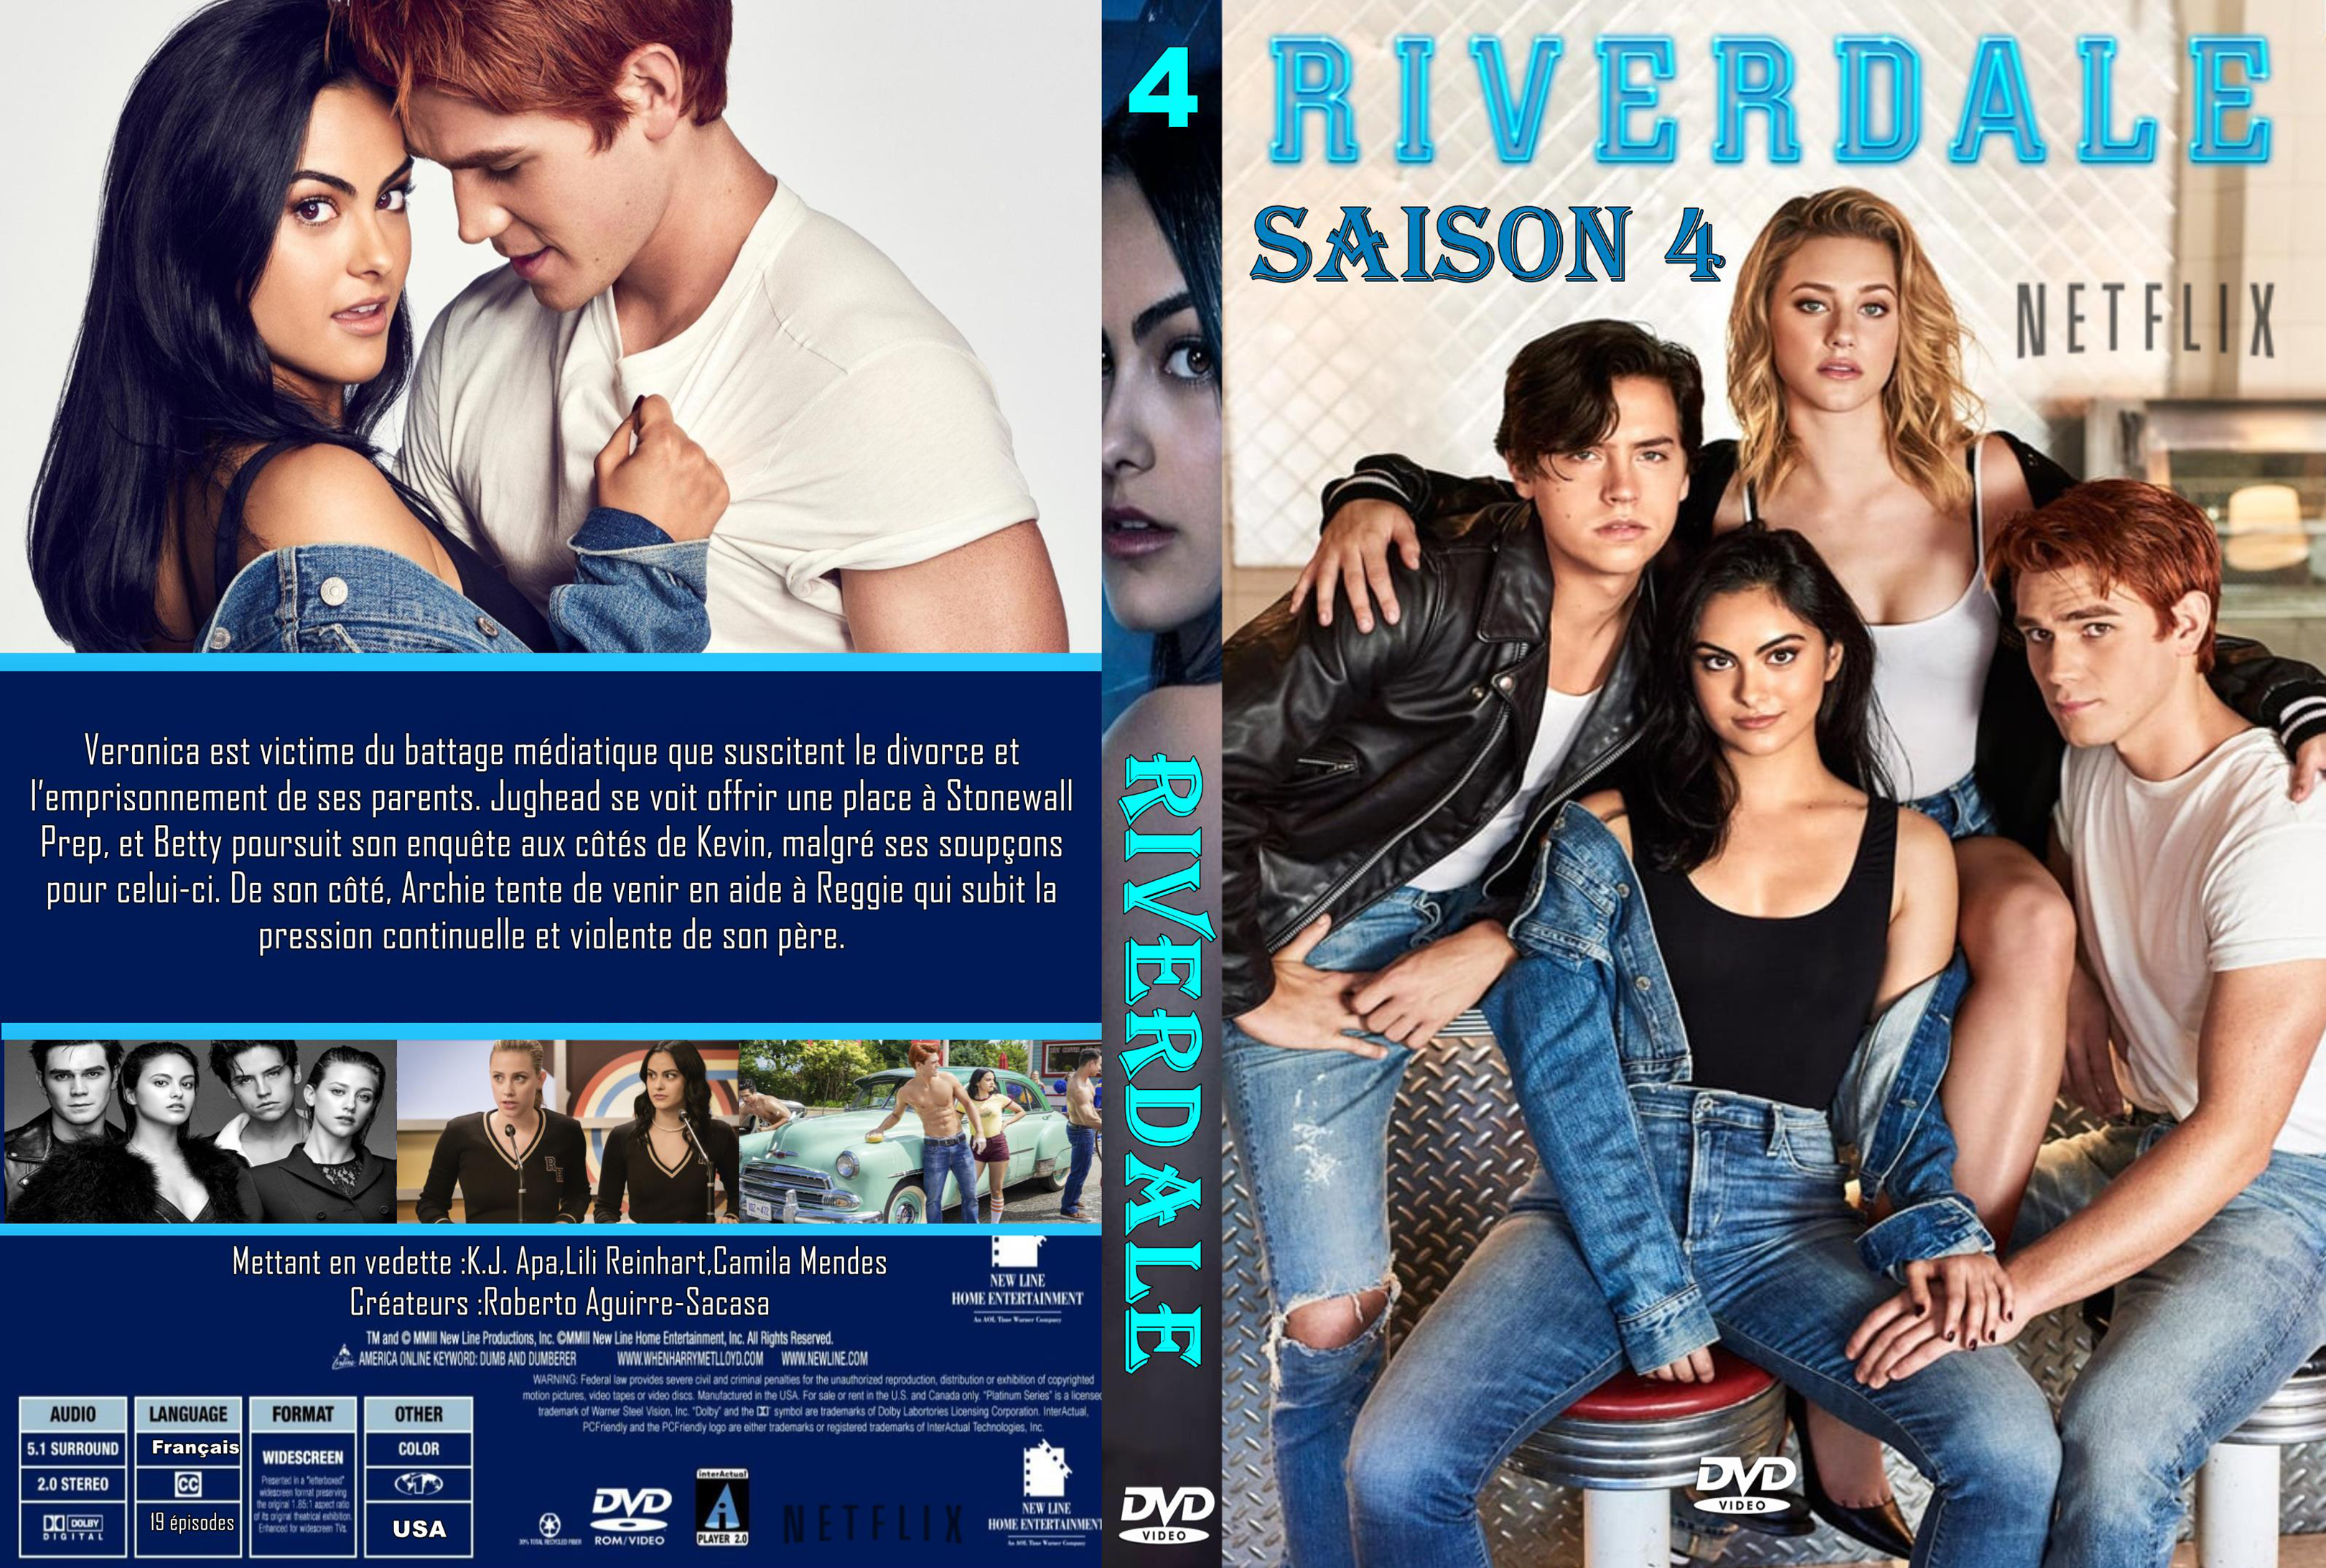 Jaquette DVD Riverdale saison 4 custom